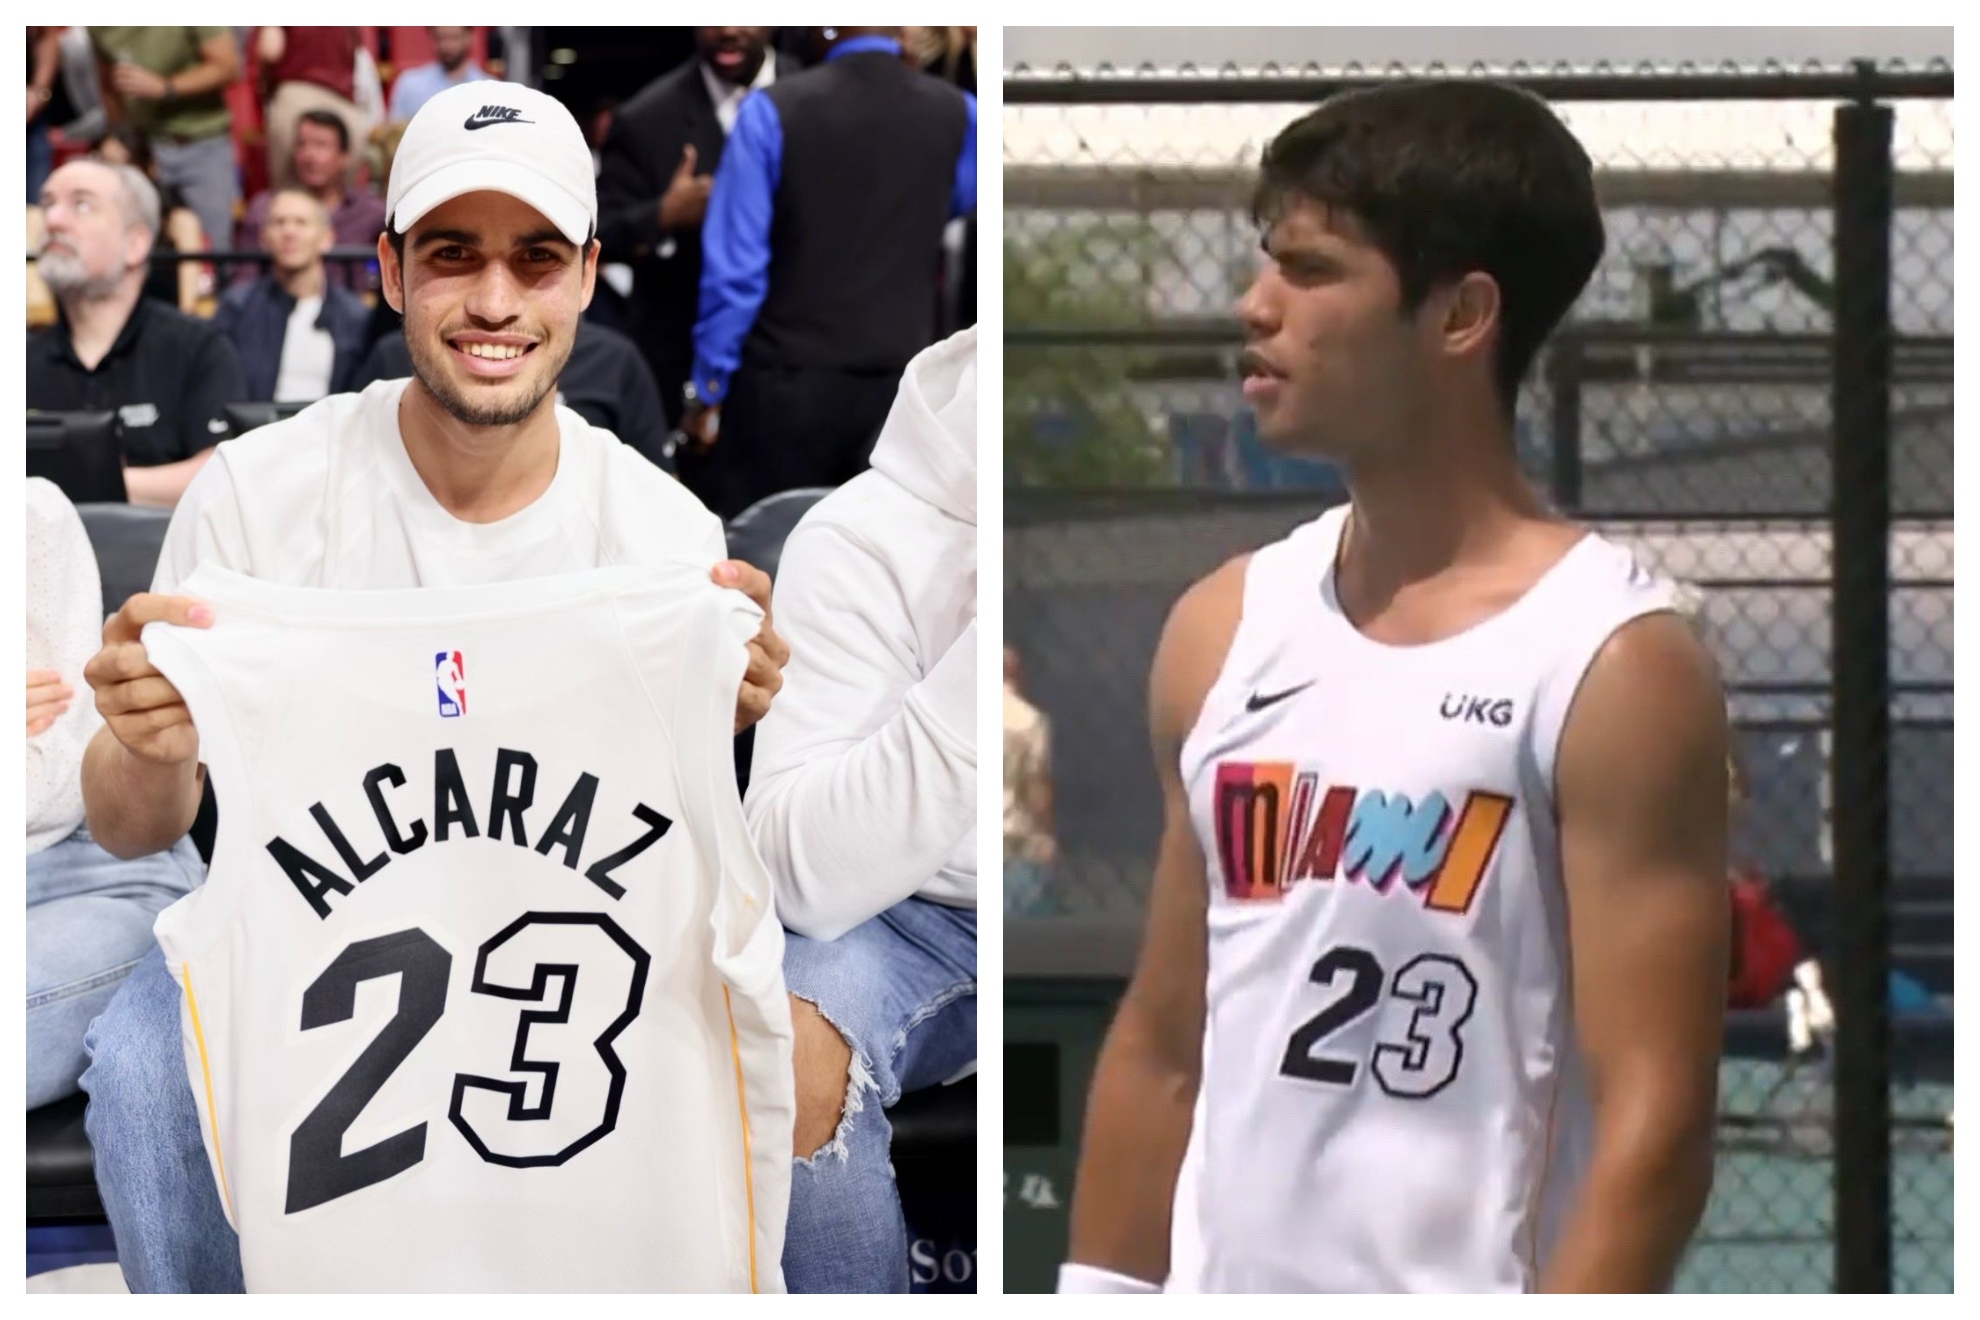 Alcaraz entrena con la camiseta de los Miami Heat